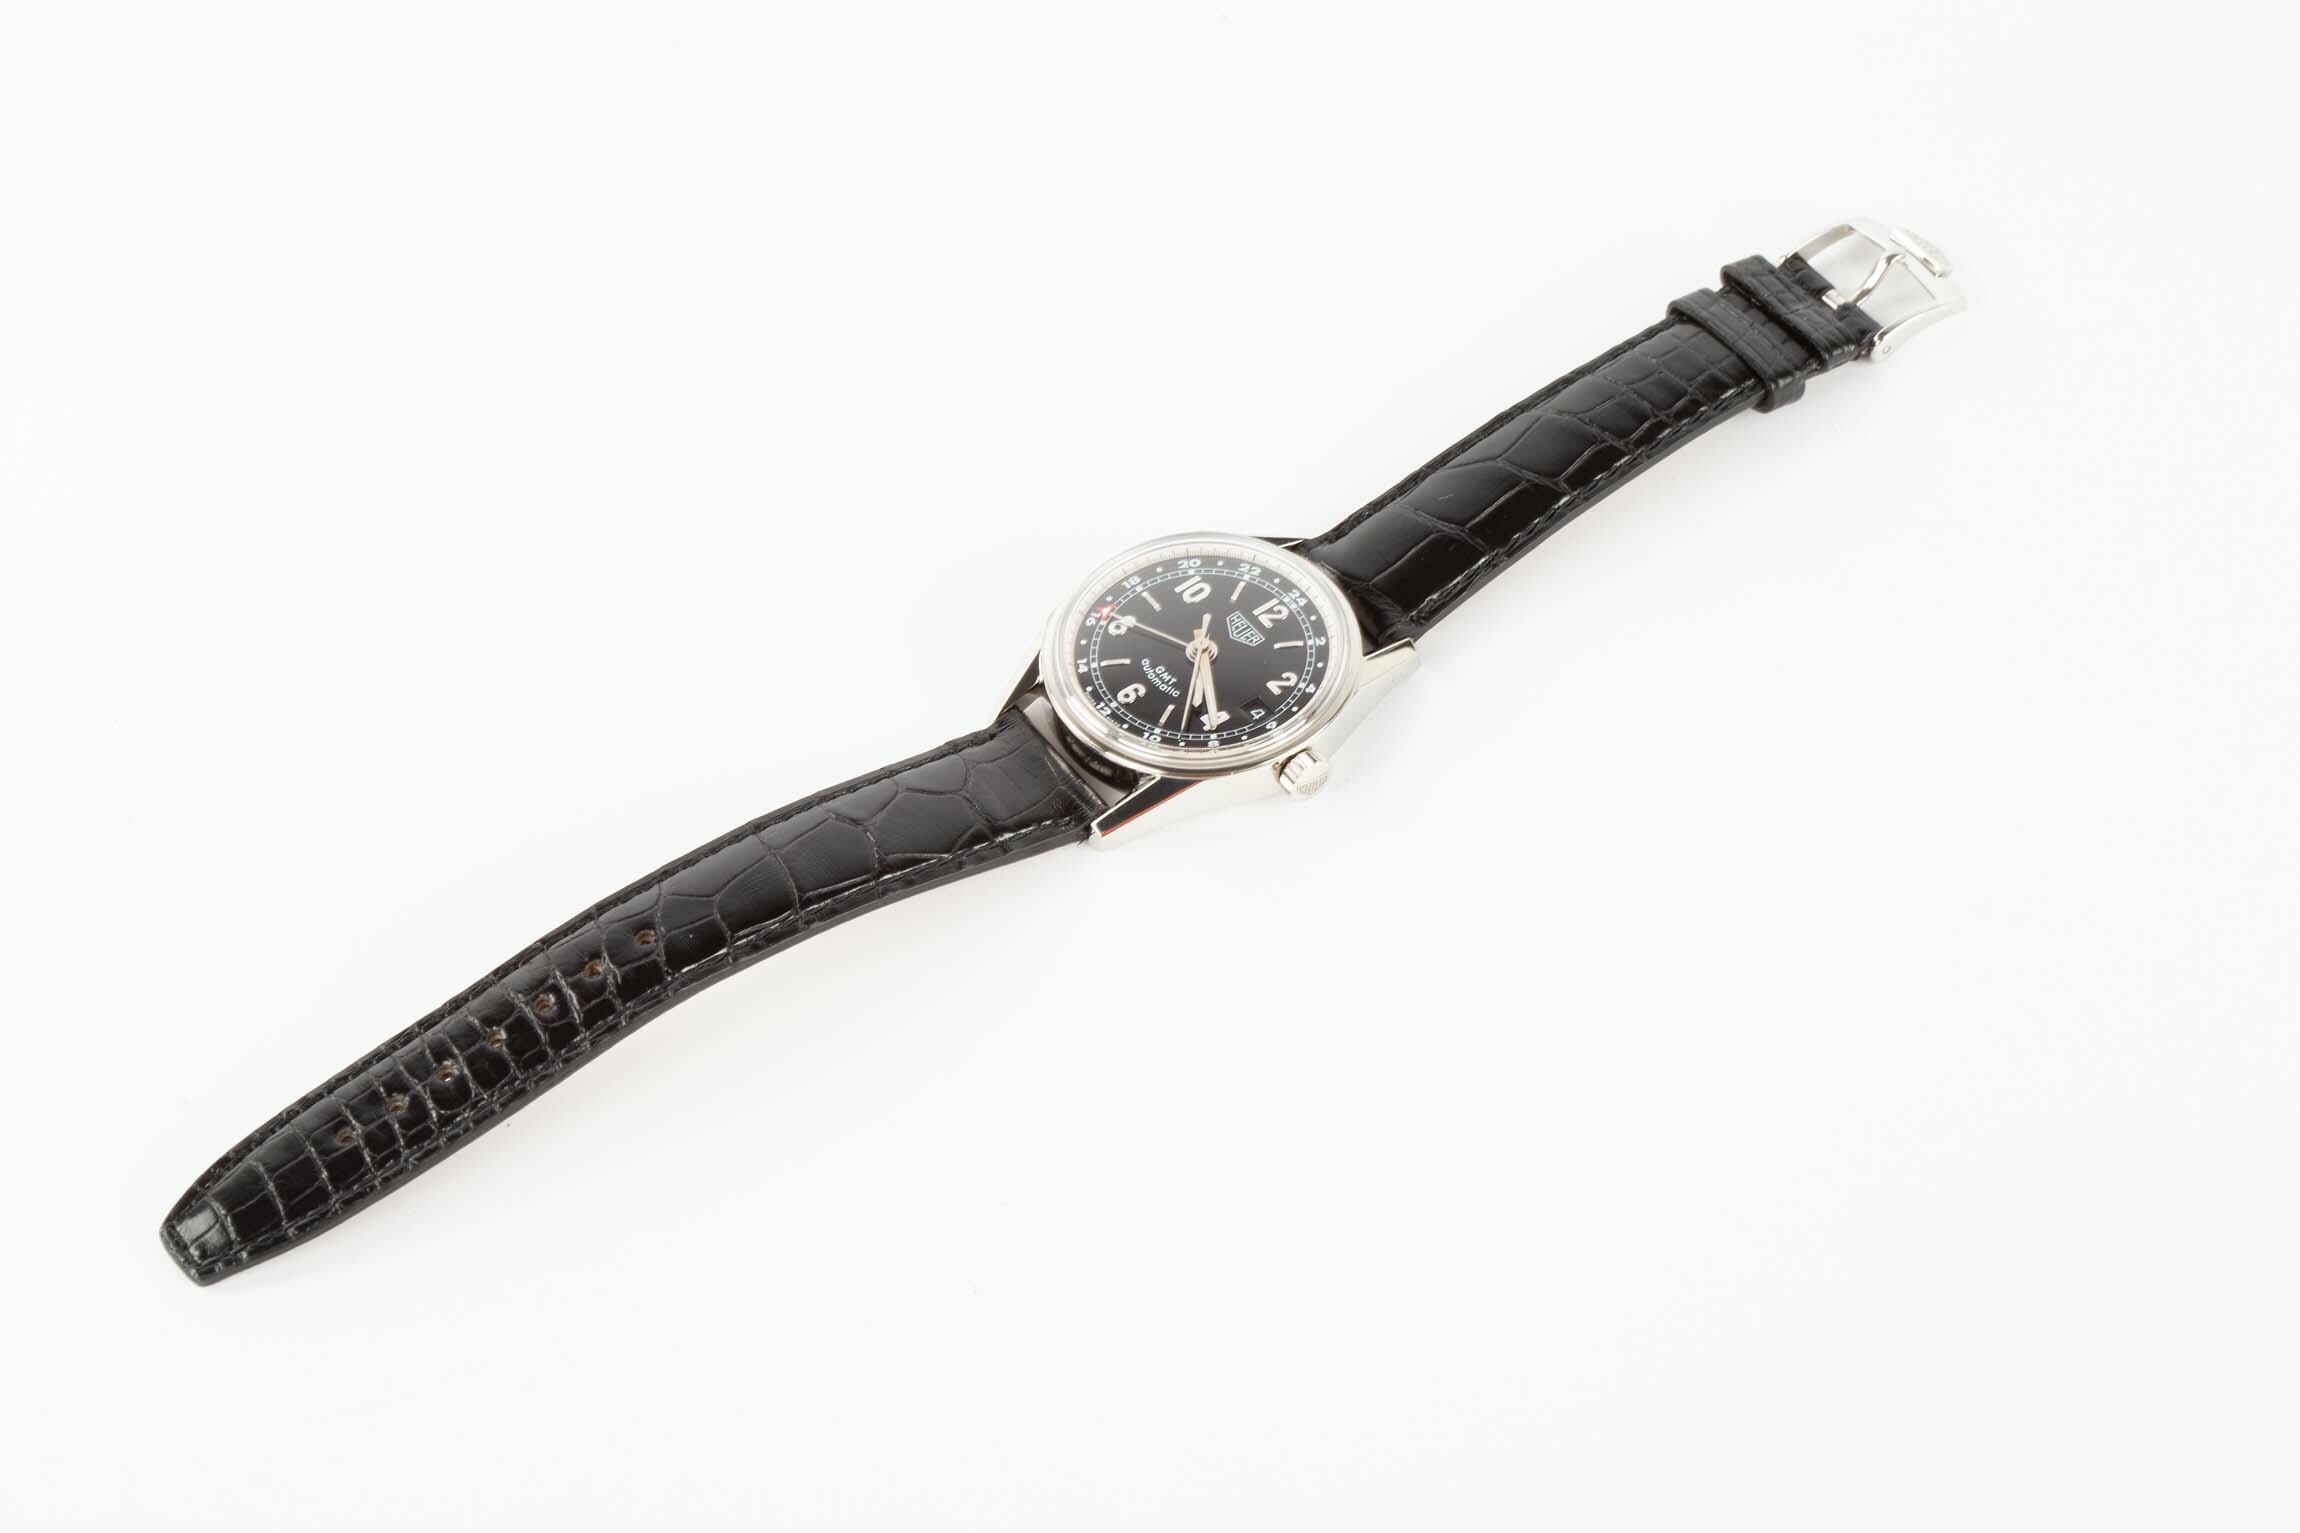 Armbanduhr, Heuer, La Chaux-de-Fonds (CH), 2000 (Deutsches Uhrenmuseum CC BY-SA)